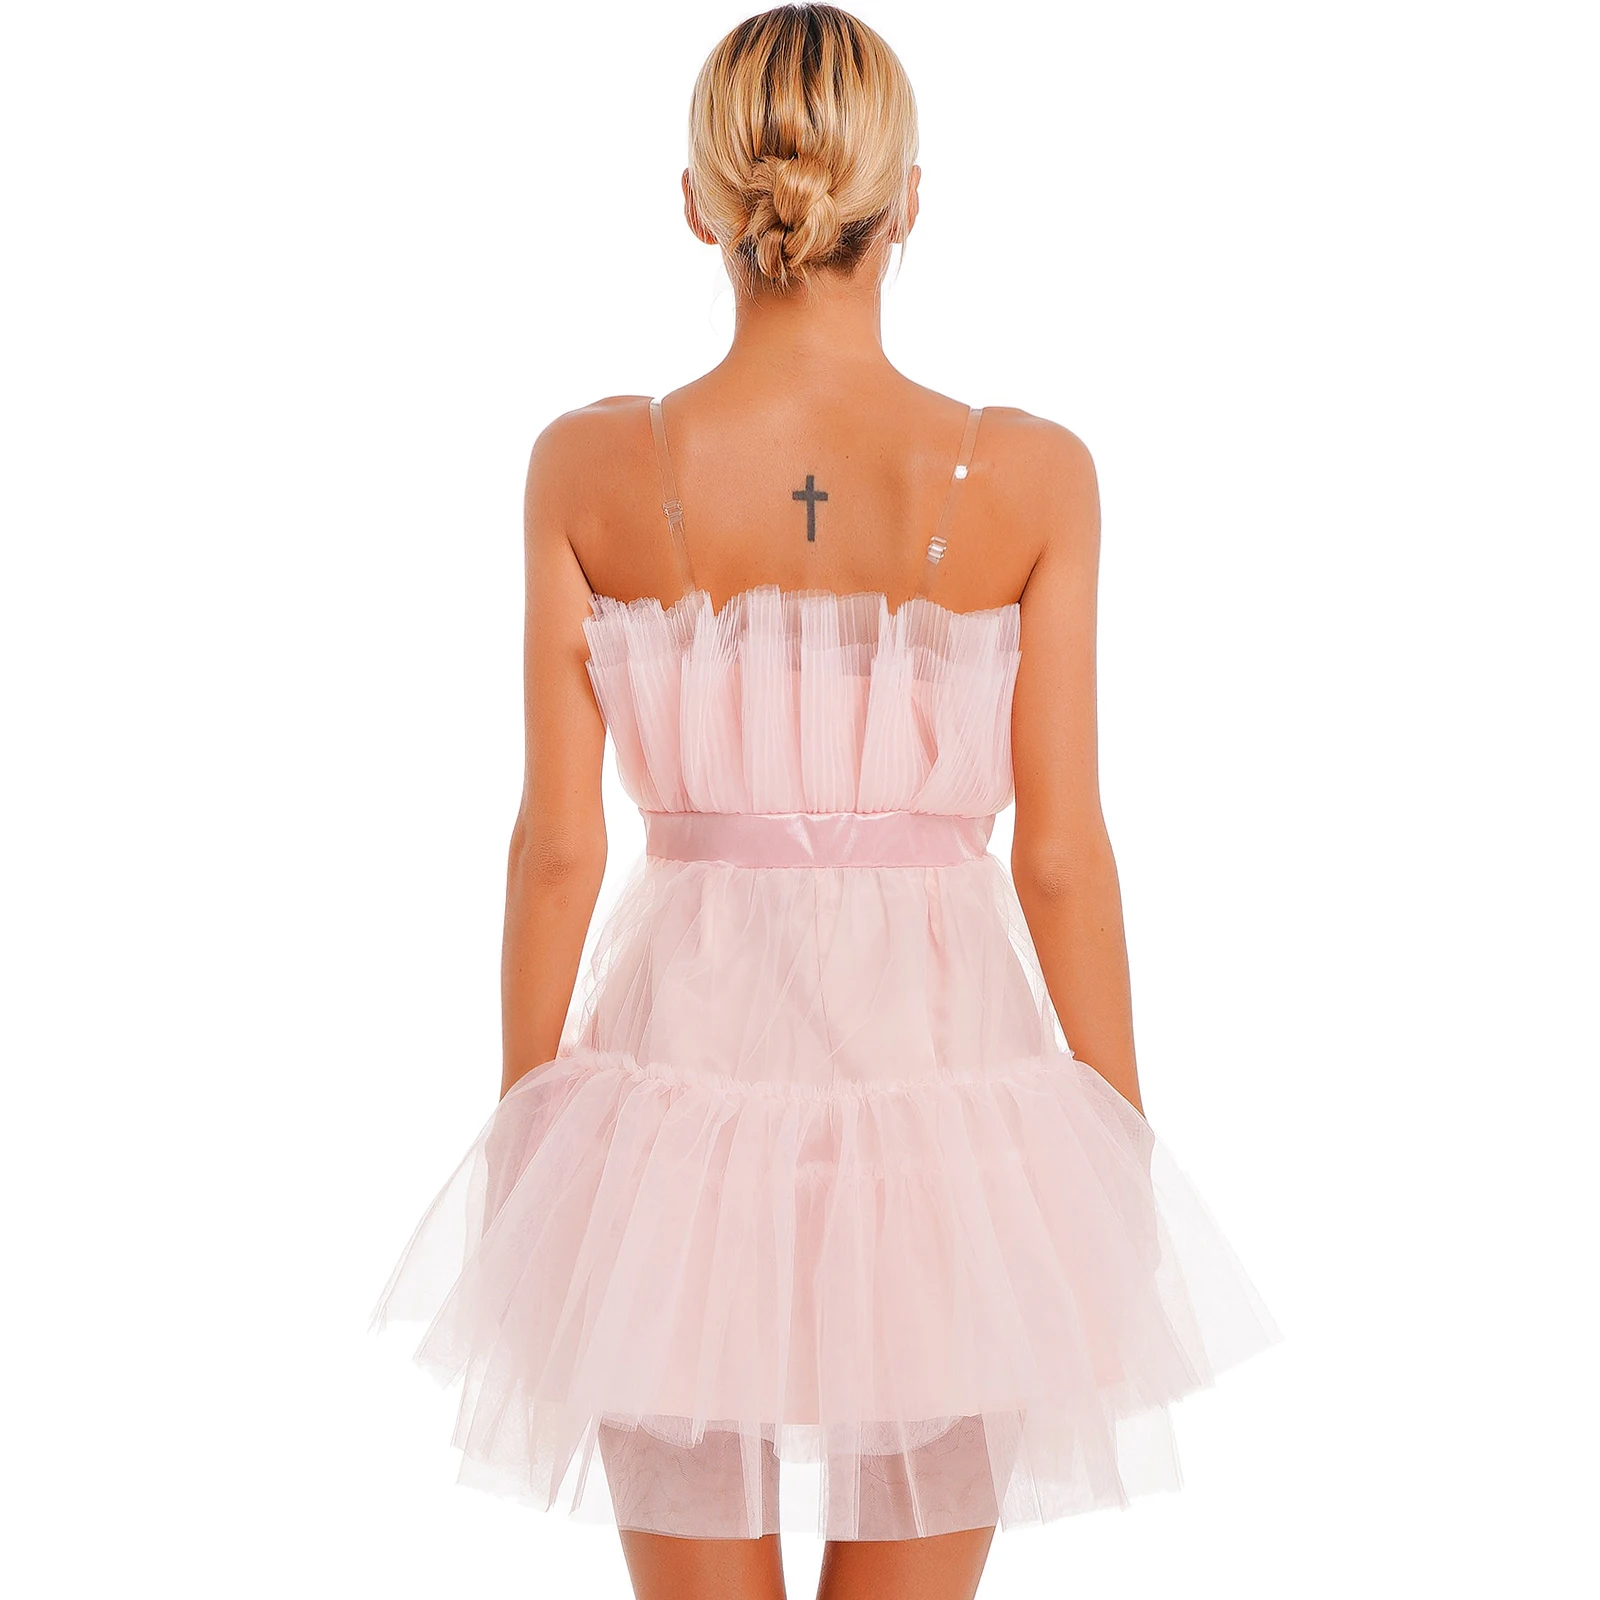 Choomomo Bayan Saf Straplez Prenses Kısa Elbiseler Çok Katmanlı Örgü Yüksek Bel Hattı Parti Elbise İlmek ile Doğum Günü için . ' - ' . 1